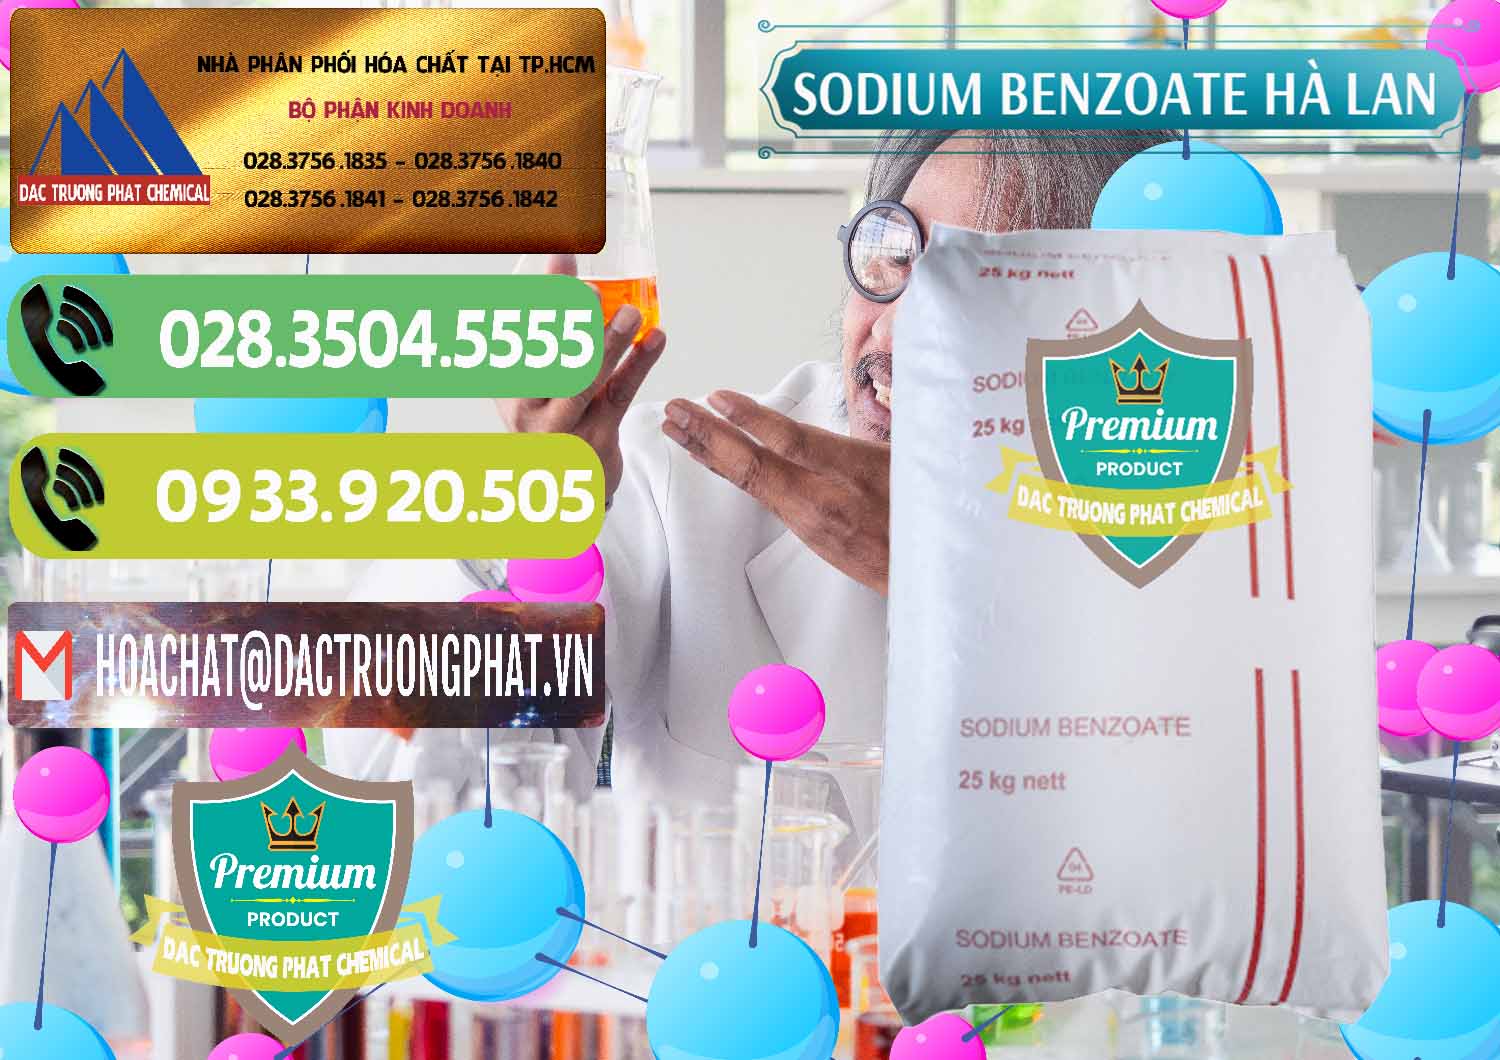 Nhà cung ứng ( bán ) Sodium Benzoate - Mốc Bột Chữ Cam Hà Lan Netherlands - 0360 - Chuyên cung cấp - bán hóa chất tại TP.HCM - hoachatmientay.vn